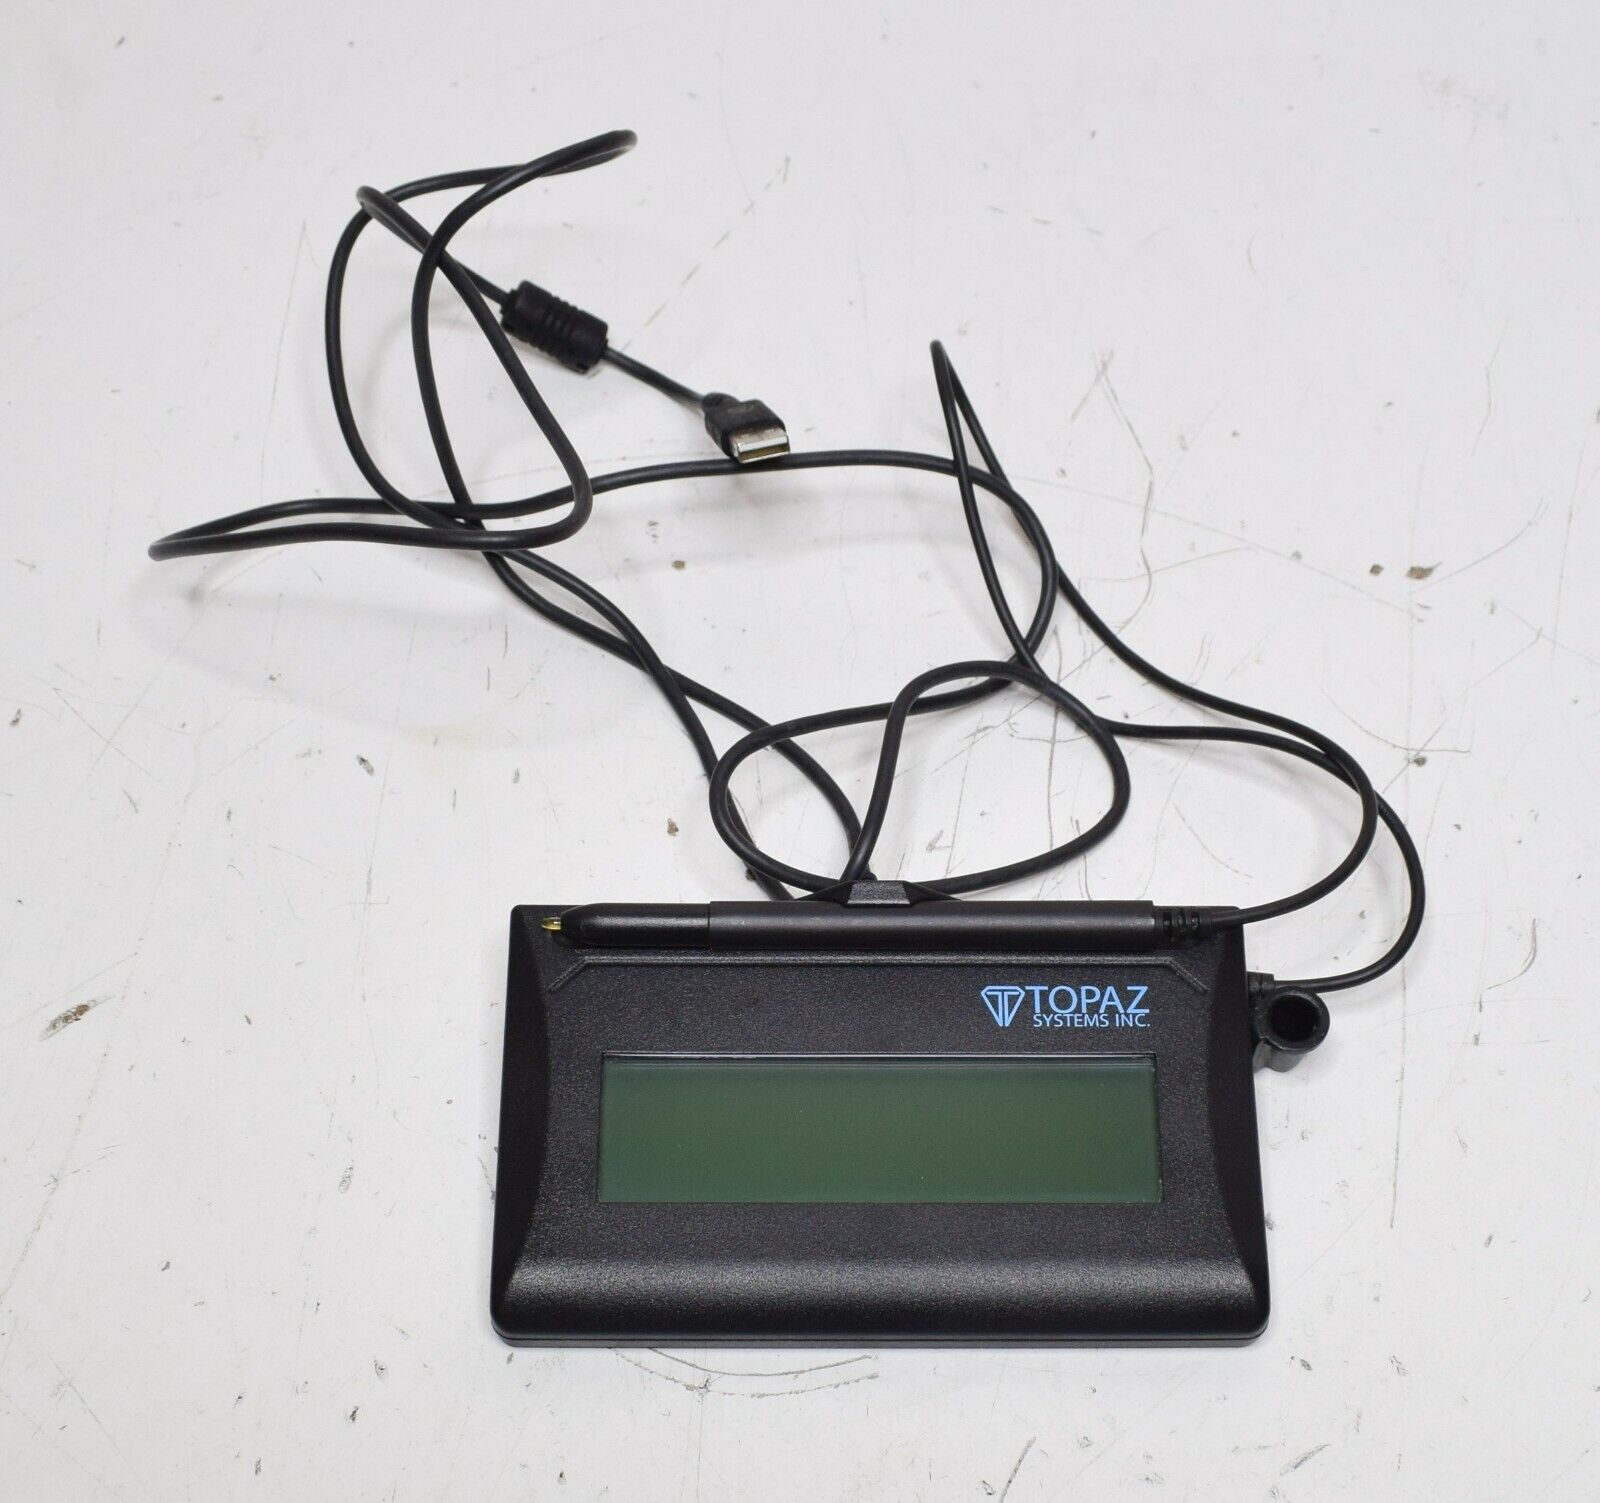 Topaz SignatureGem T-LBK462-HSX-R LCD 1x5 Signature Capture Pad